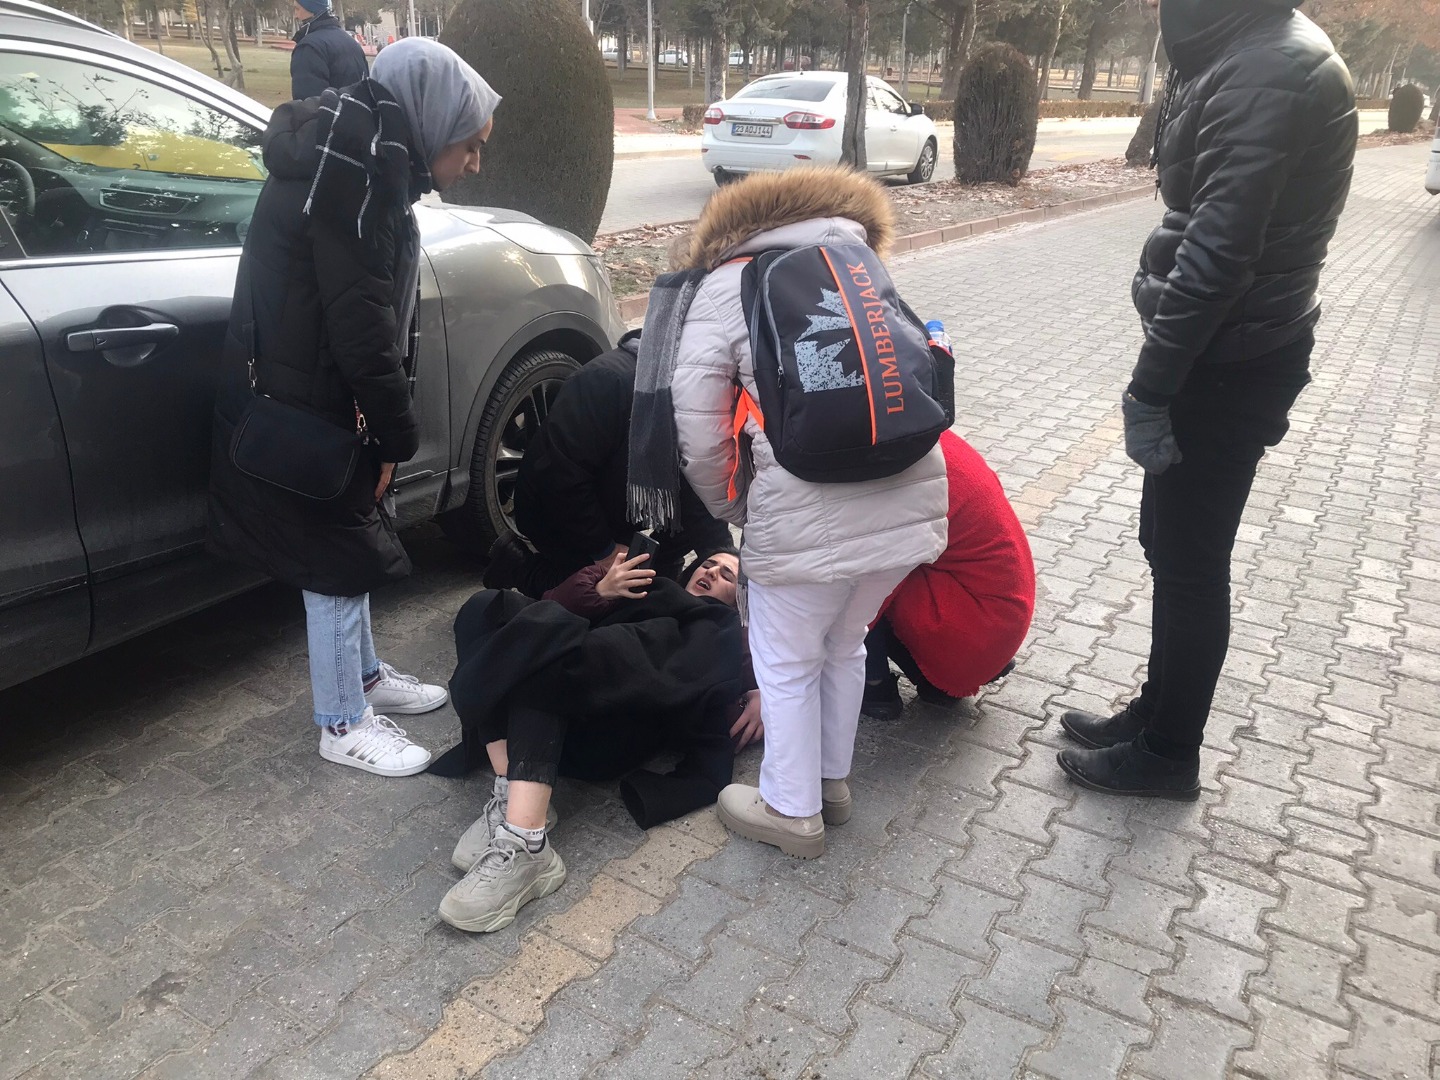 Elazığ’da otomobilin çarptığı üniversiteli genç yaralandı